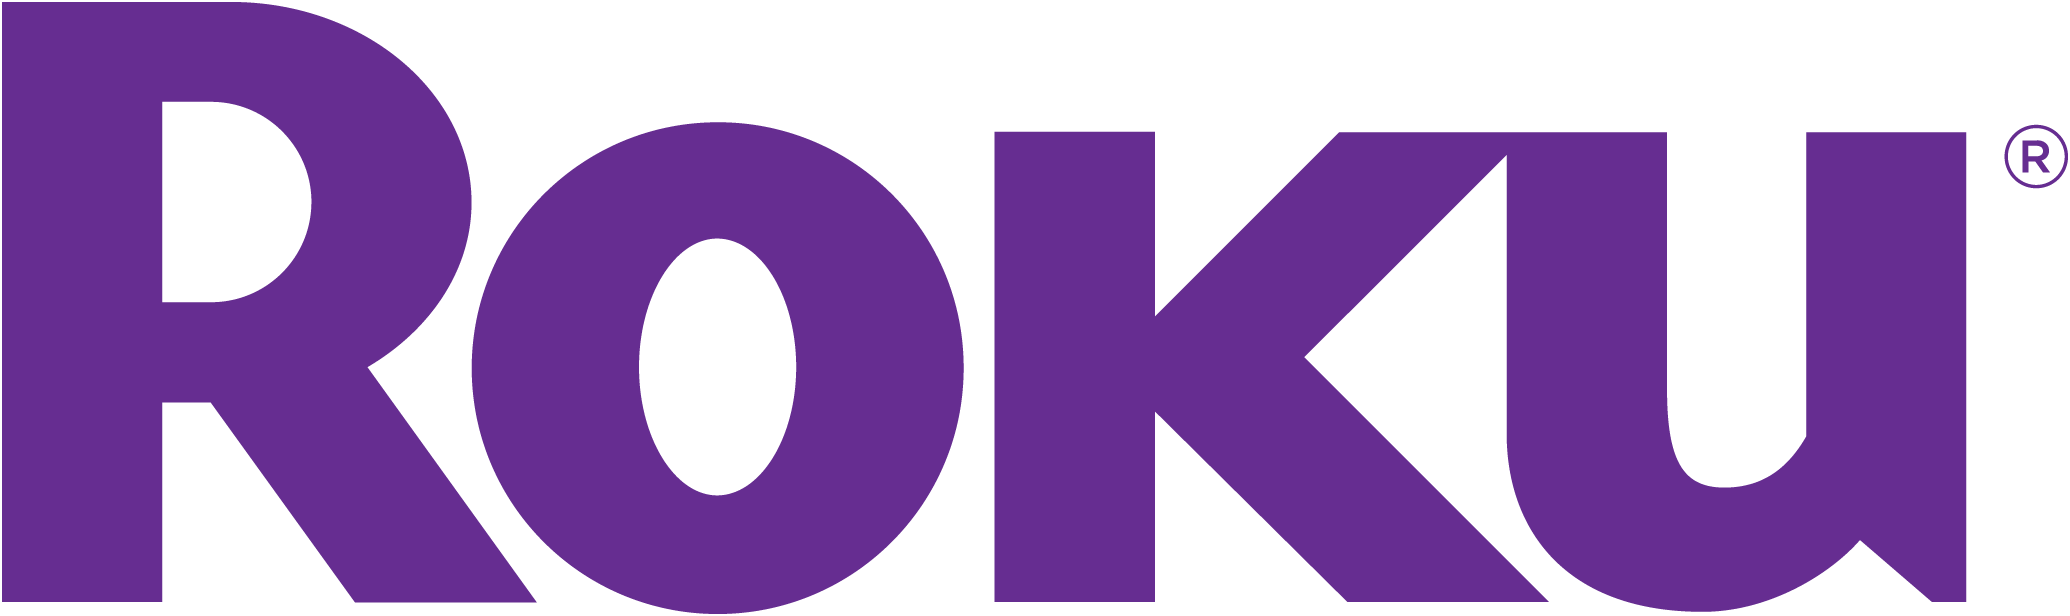 Roku – Streaming players, smart TVs, wireless speakers & audio | Roku